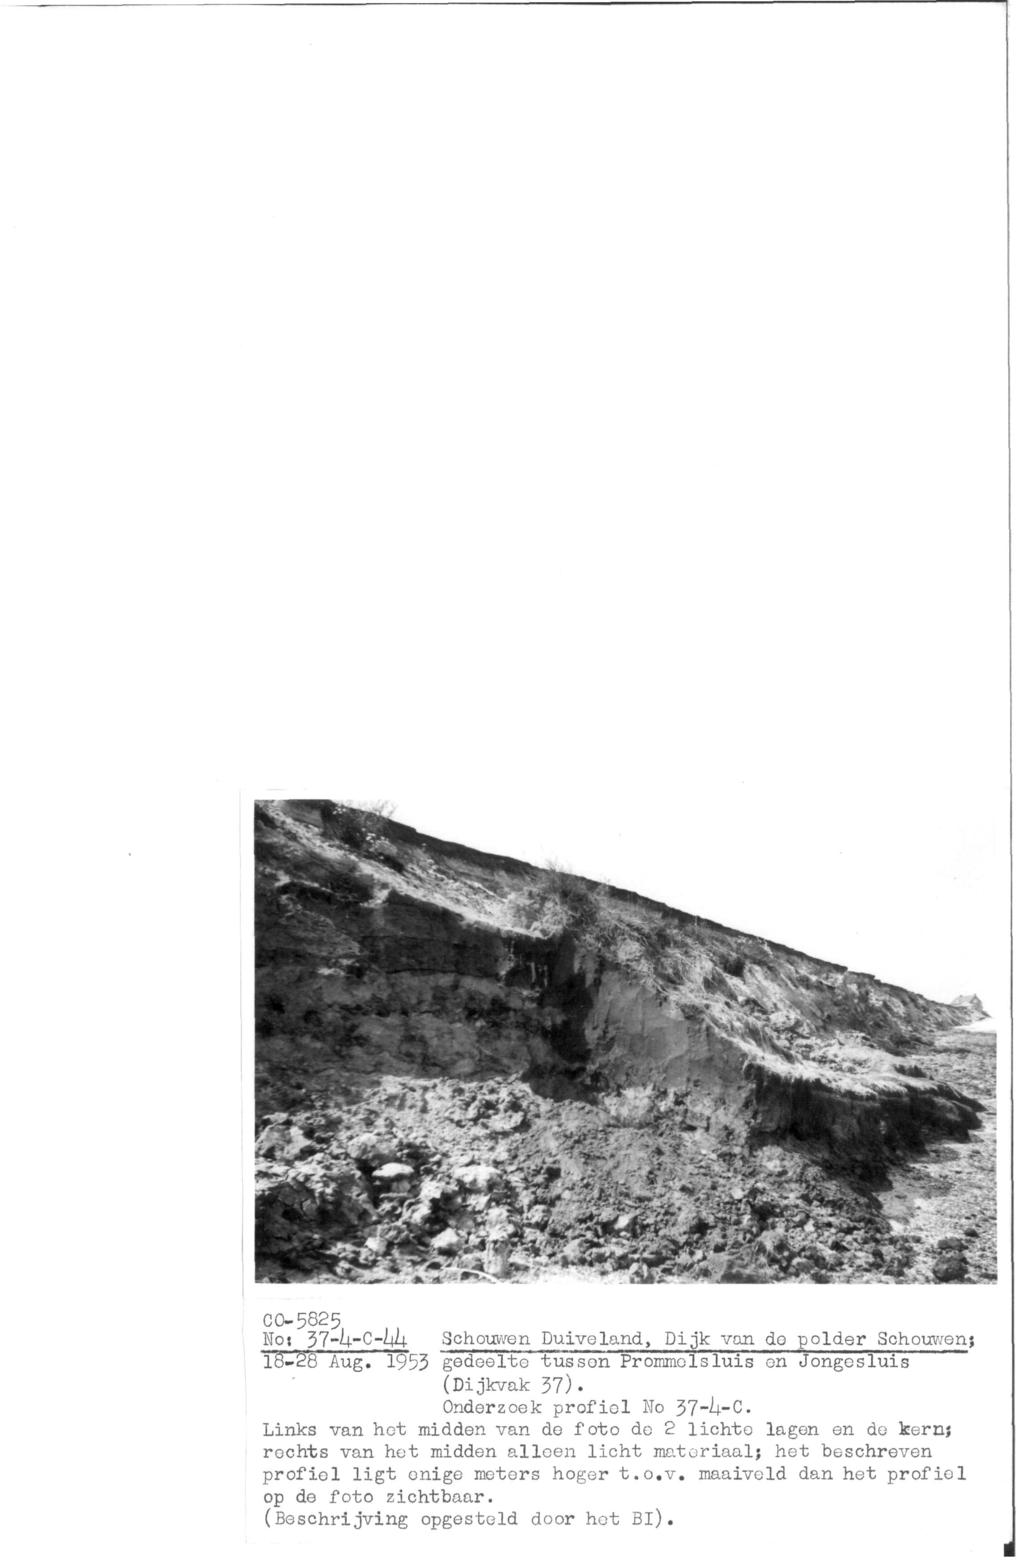 CO-5825 No; 37-h-C-hh Schouwen Duiveland, Dijk van do polder Schouwen; 18-28 Aug. 1953 gedeelte tussen Prommolsluis en Jongesluis (Dijkvak 37). Onderzoek profiel No 37-^4-C.